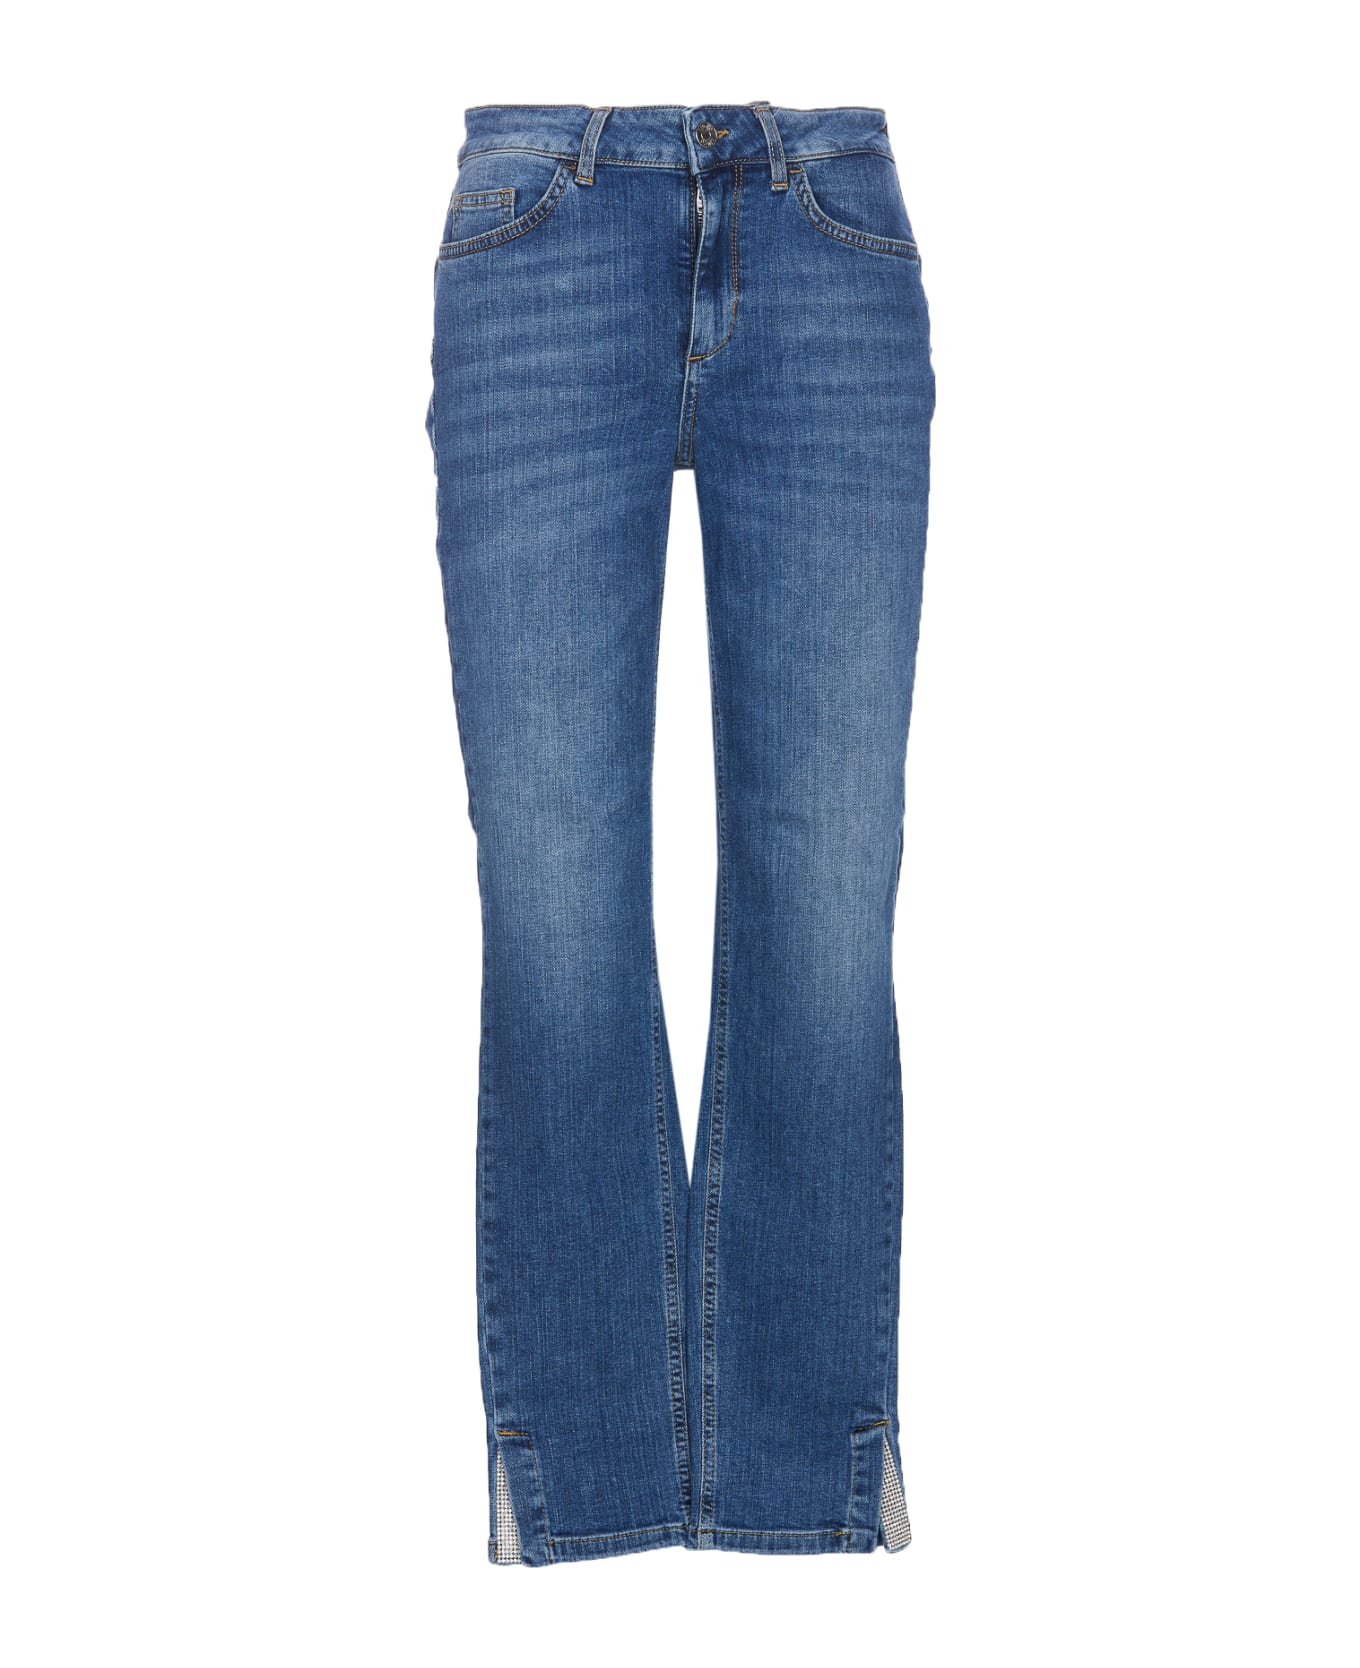 Liu-Jo New Classy Denim Jeans - Blue